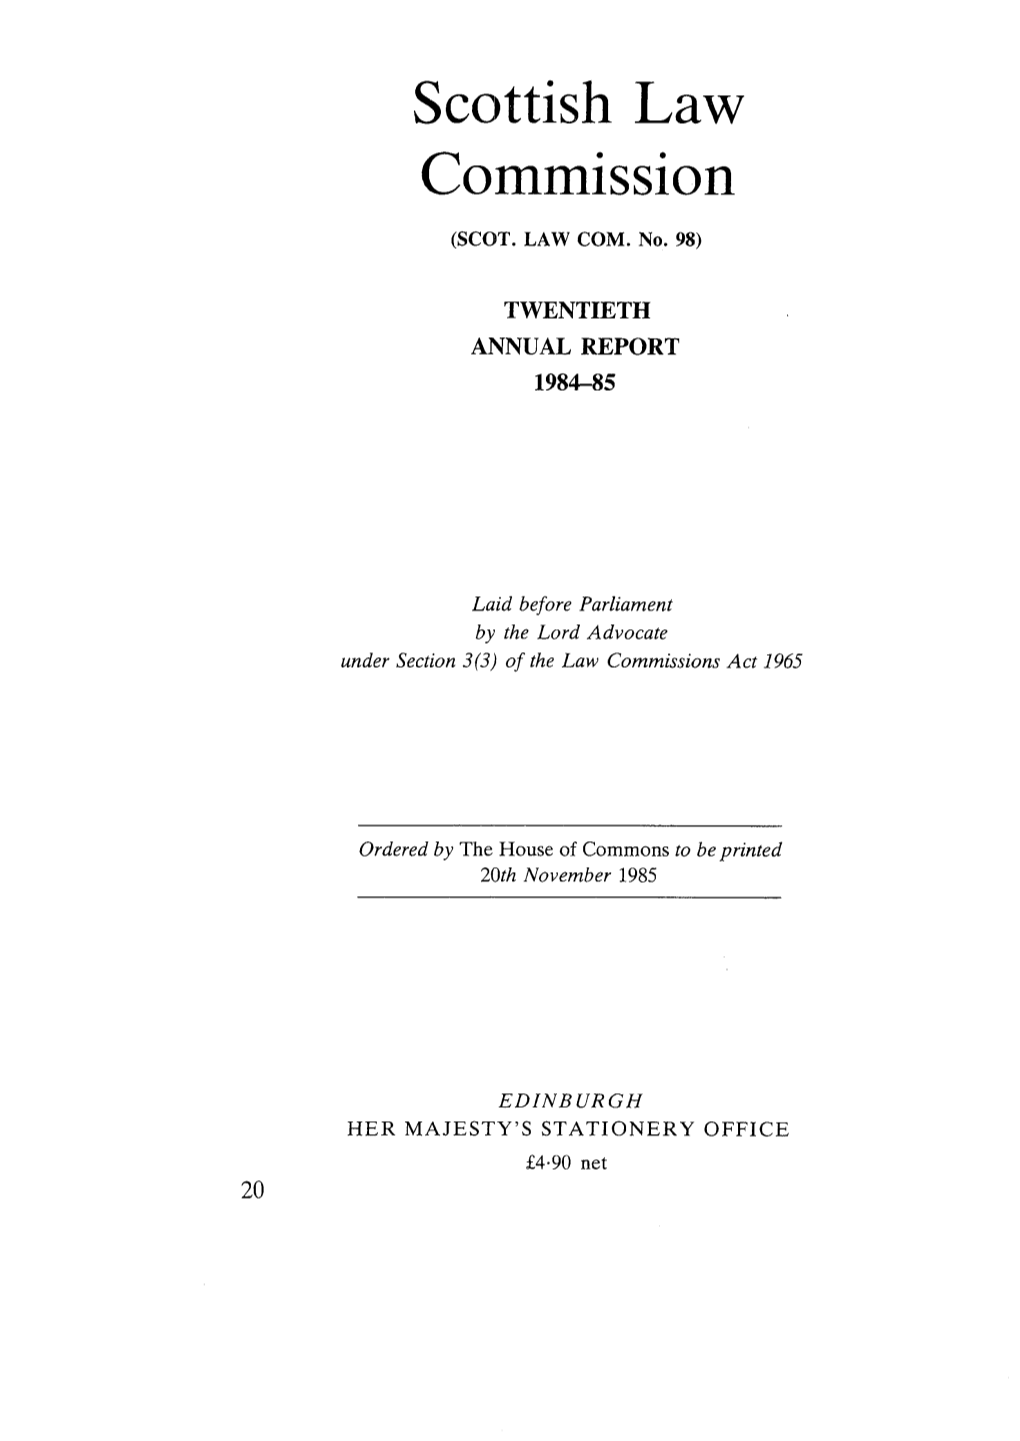 Twentieth Annual Report 1984-85